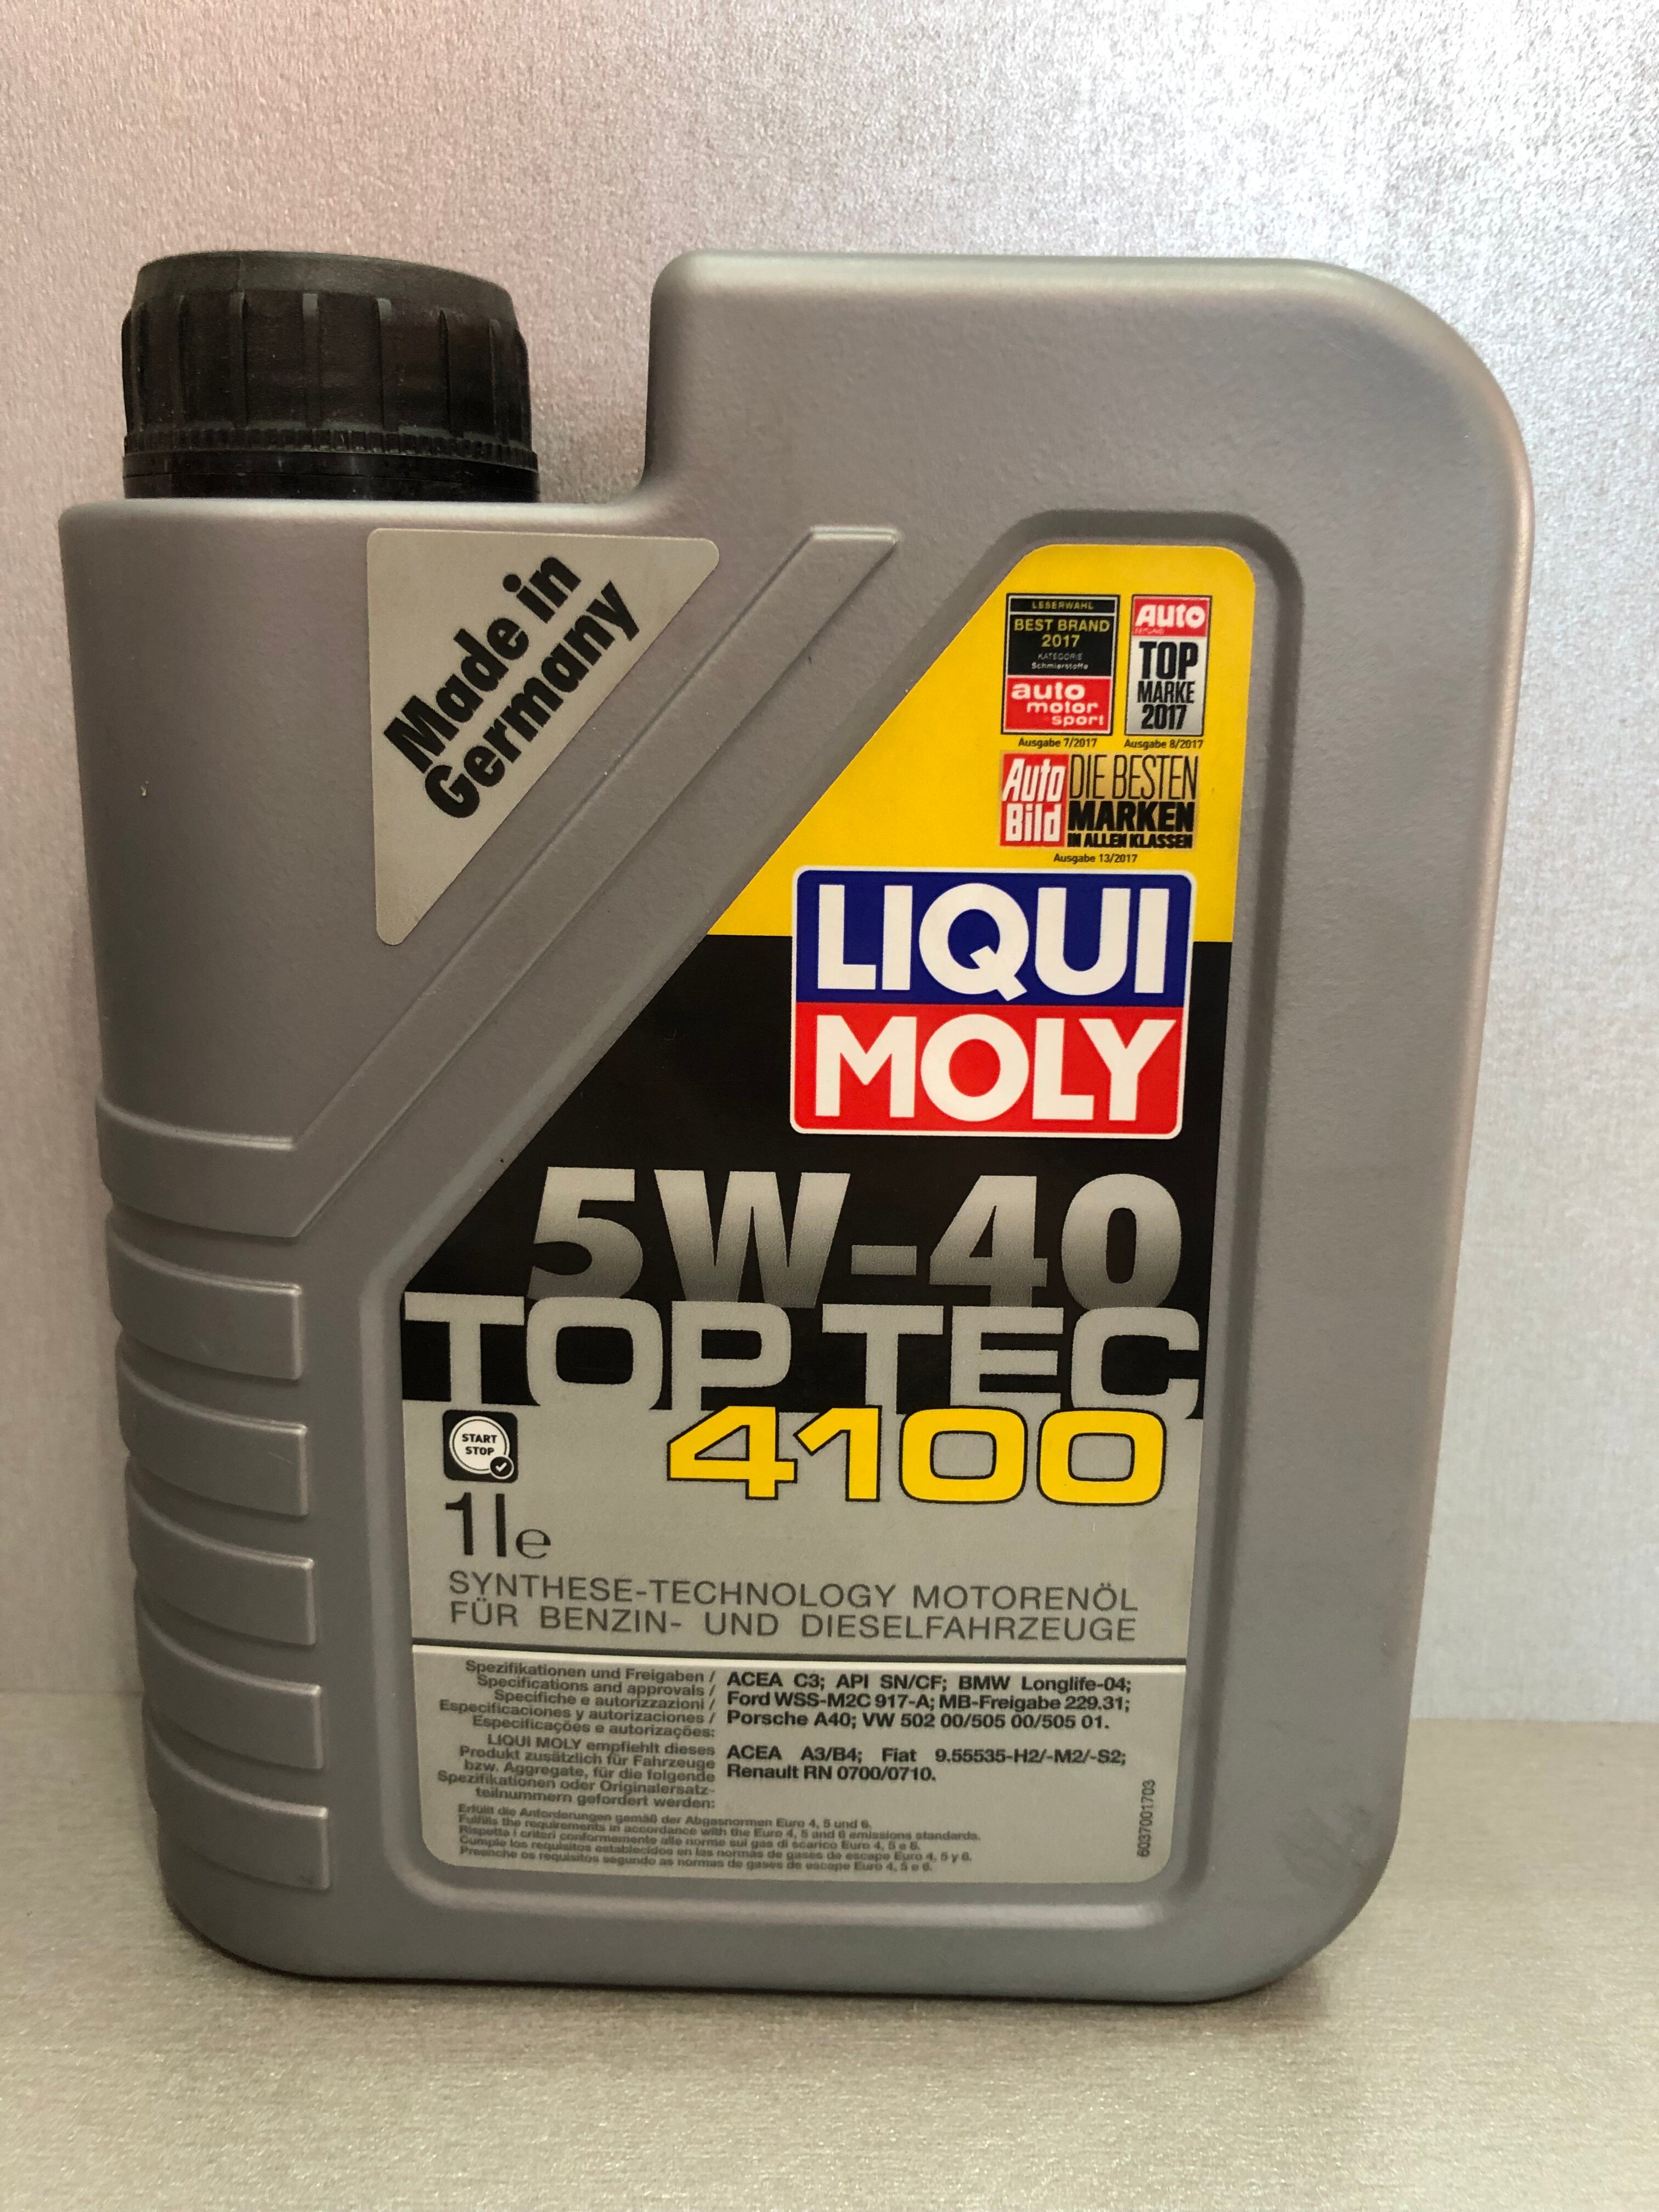   Liqui Moly Top Tec 4100 5W-40 1 . API SN/CF